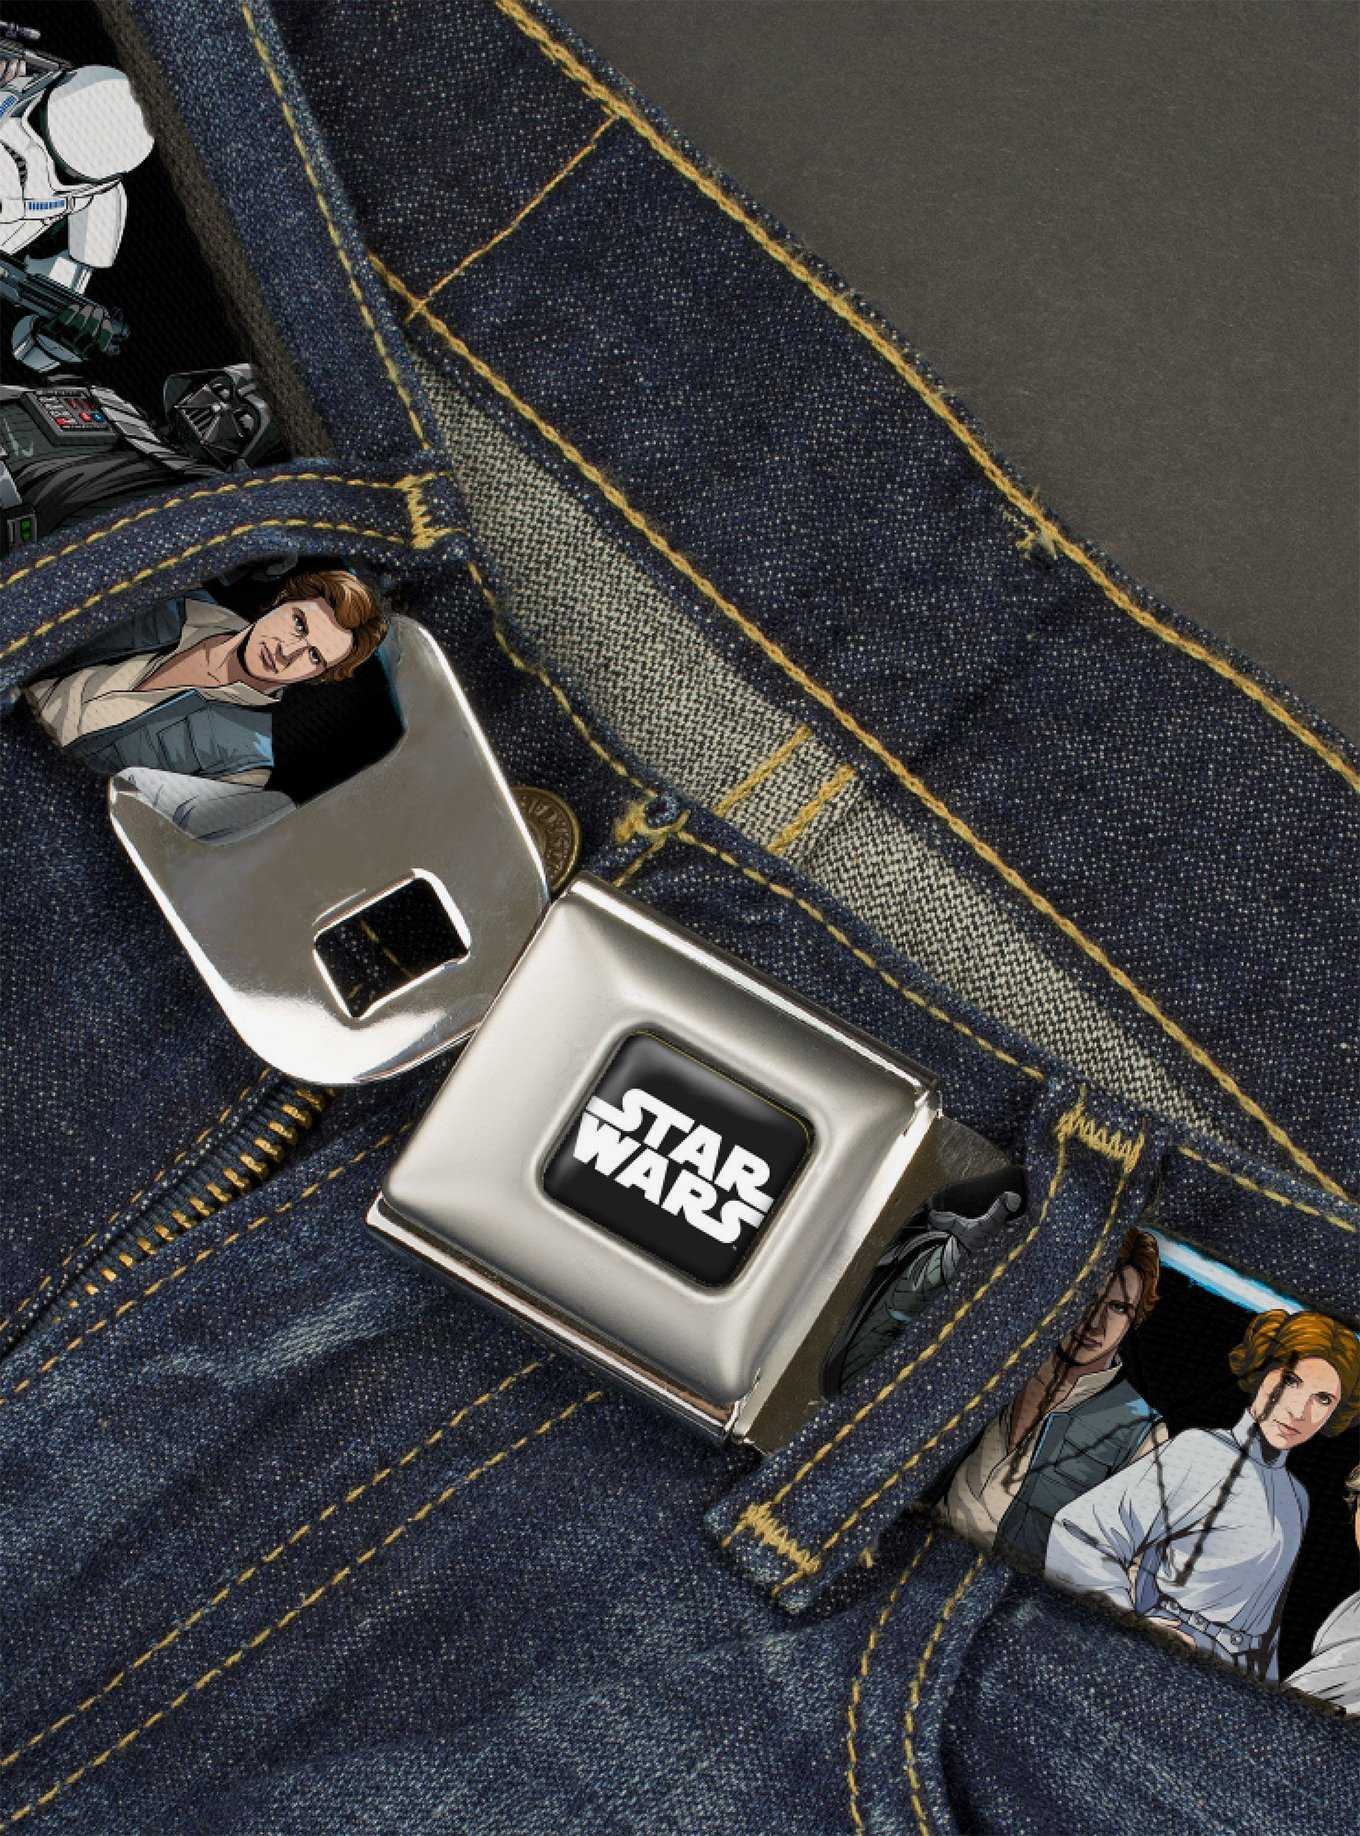 Star Wars Classic Character Poses Seatbelt Belt, , hi-res